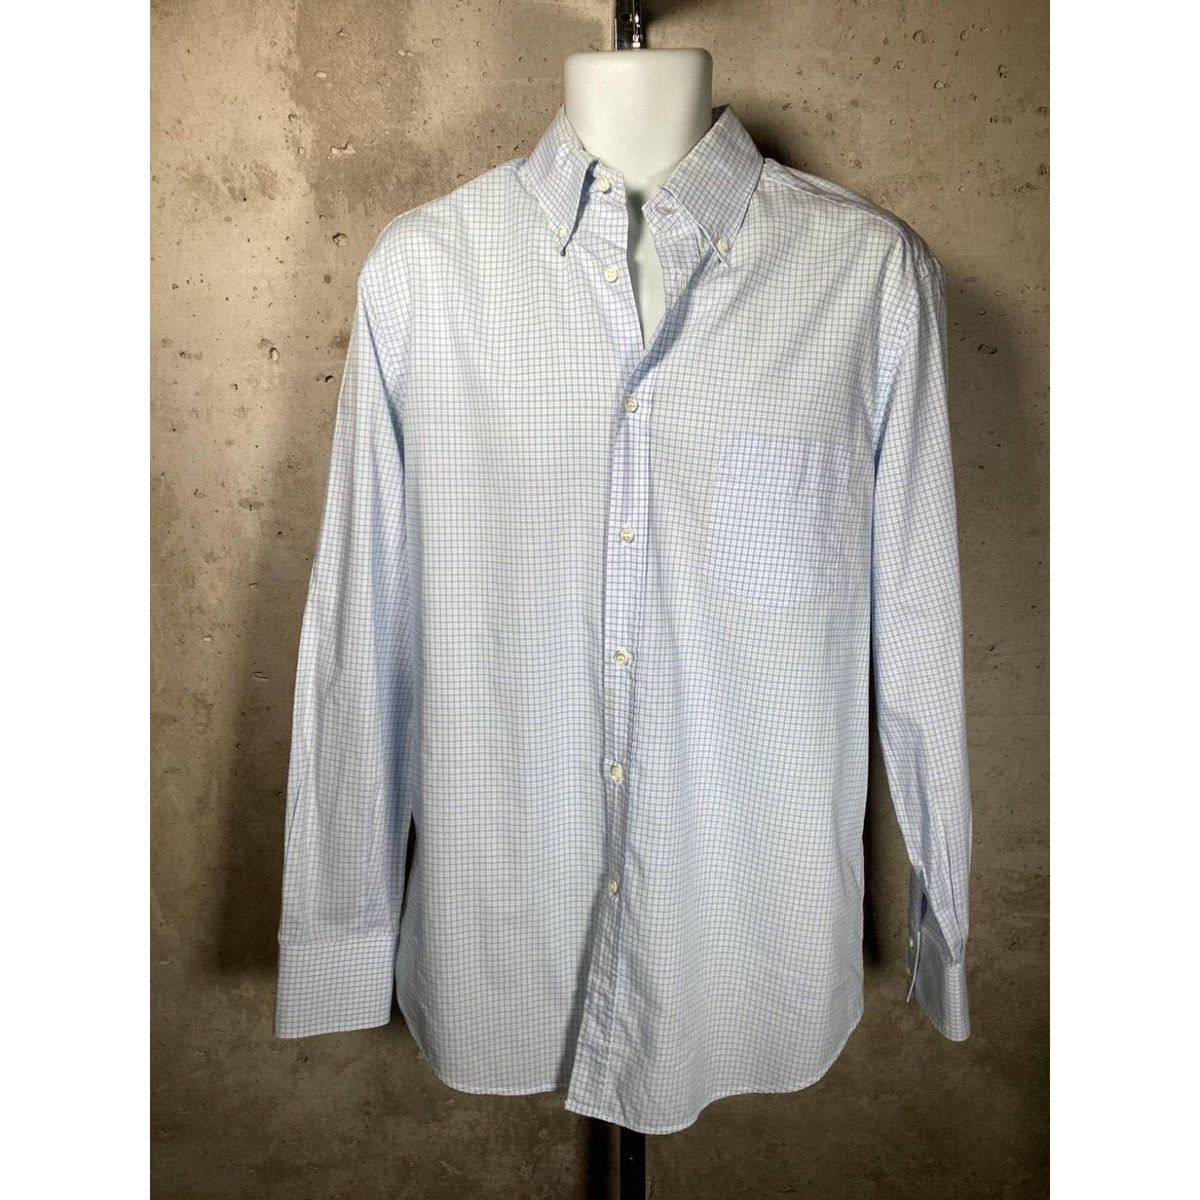 Brunello Cucinelli Men’s Blue Plaid Dress Shirt Sz. Large